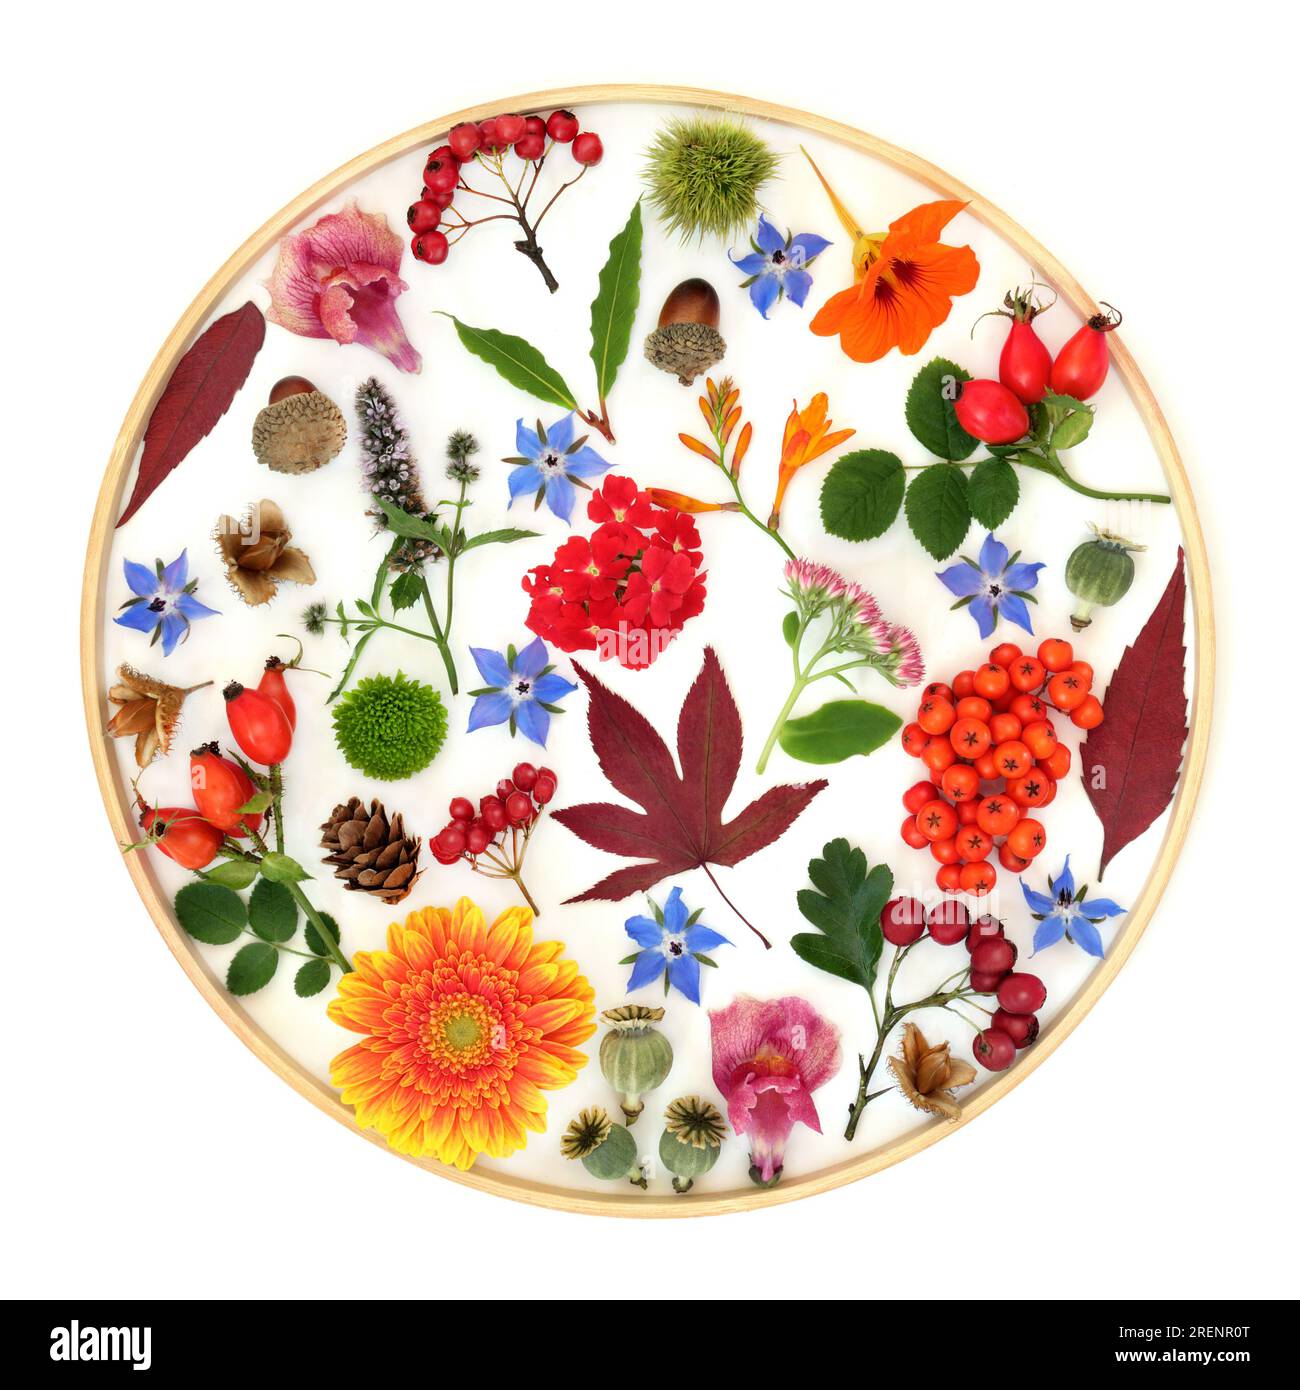 Otoño Acción de Gracias El otoño deja flores, nueces, diseño de fruta de baya sobre fondo blanco en marco circular de madera. Diseño abstracto de flora y fauna. Foto de stock